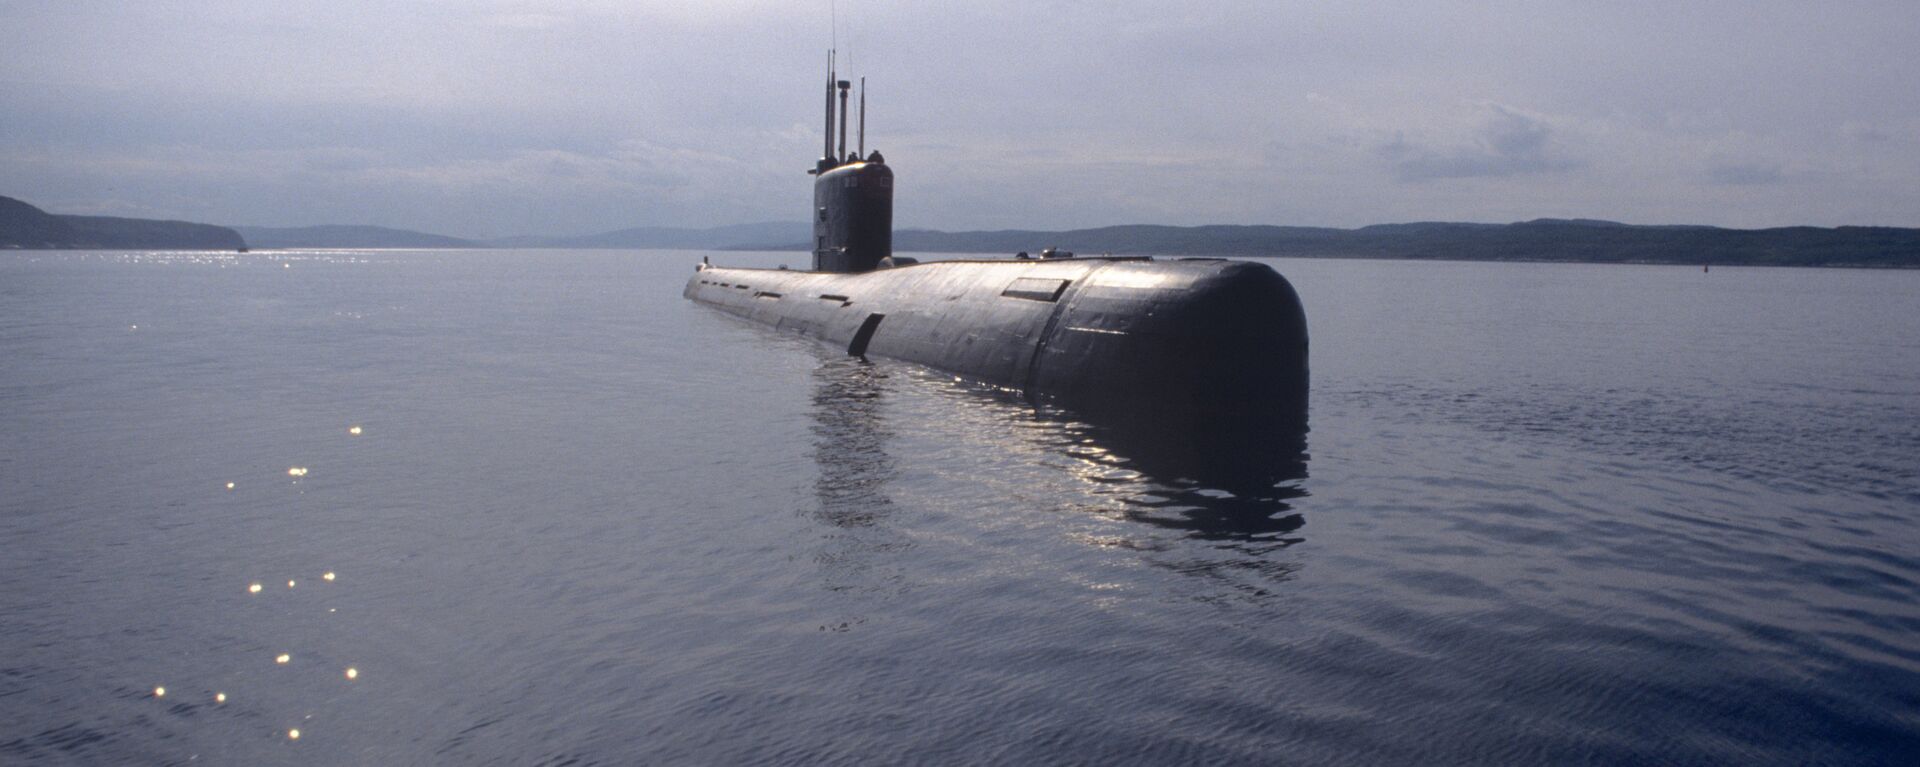 Дизельная подводная торпедная лодка класса Варшавянка - Sputnik Latvija, 1920, 17.05.2021